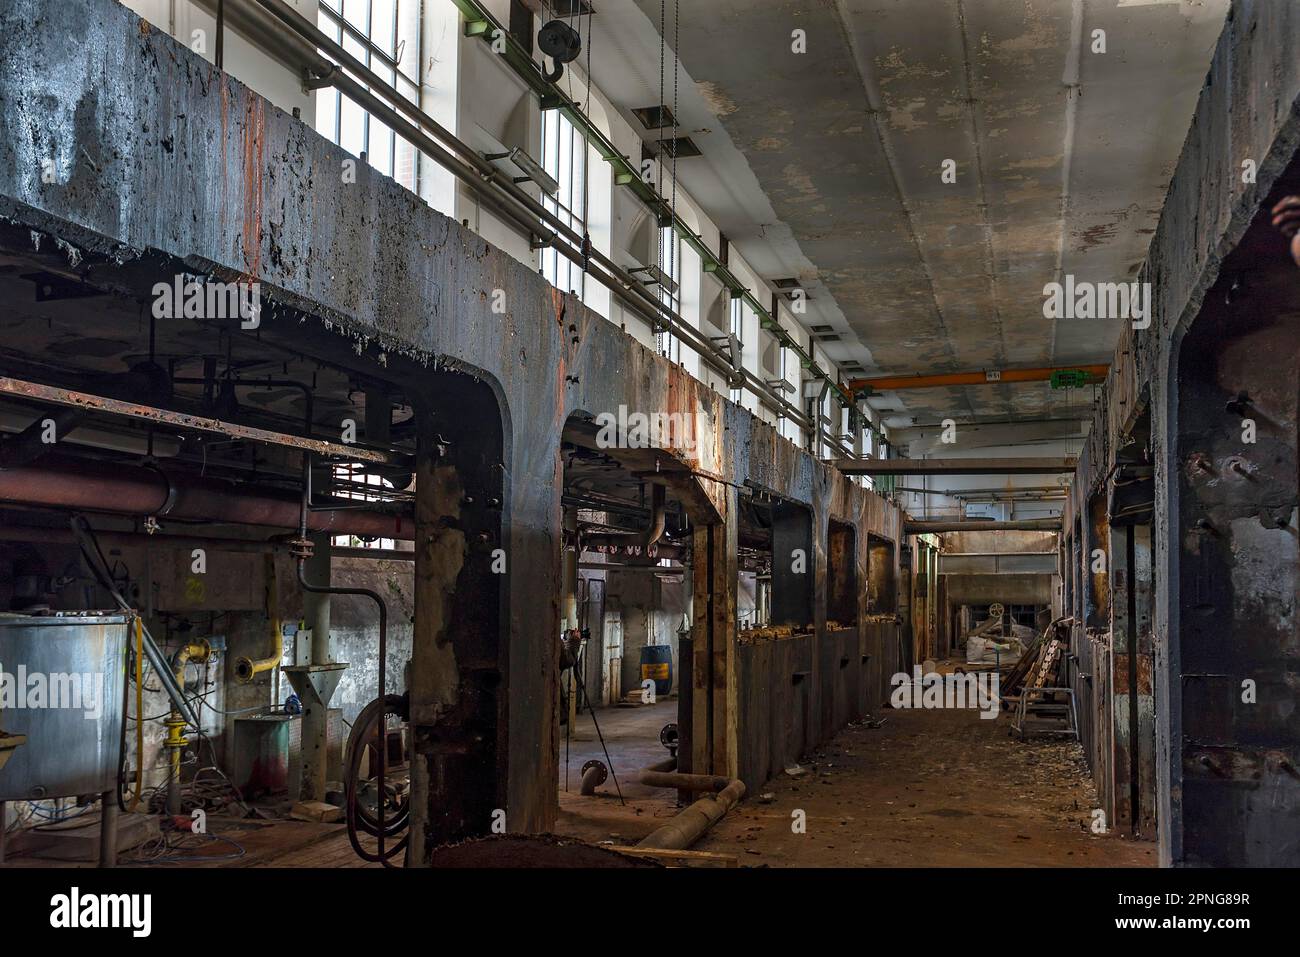 Démantèlement des salles de production d'une ancienne usine de papier, Lost place, Bade-Wurtemberg, Allemagne Banque D'Images